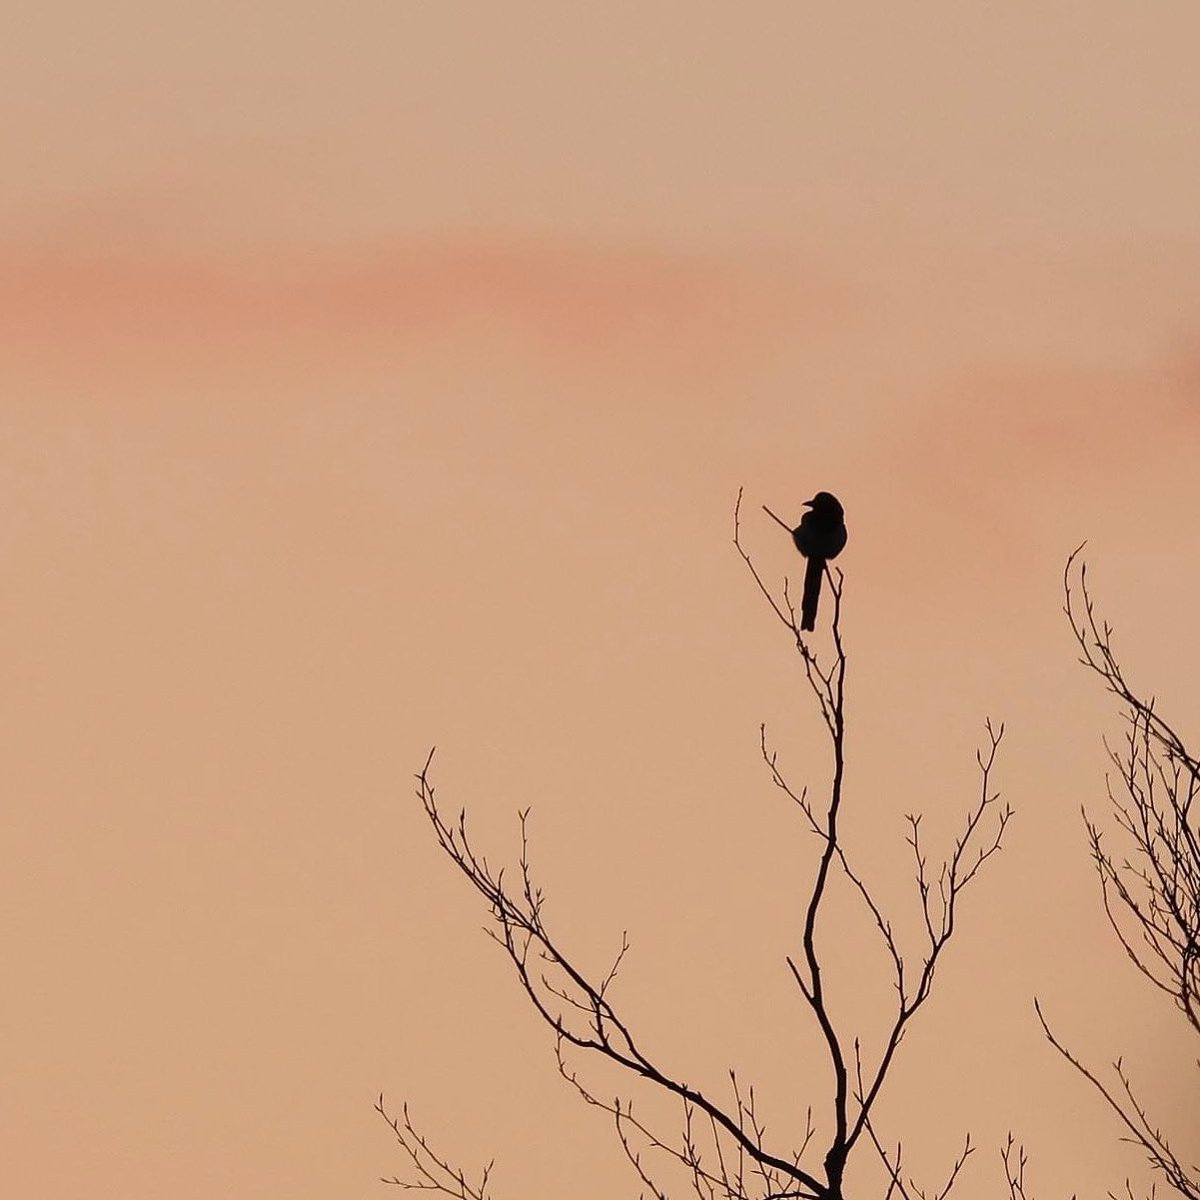 A Magpie at sunrise. @kilkennyweather @nore_vision @BirdWatchIE @BioDataCentre @iweatheronline @Irishwildlife #sunrise